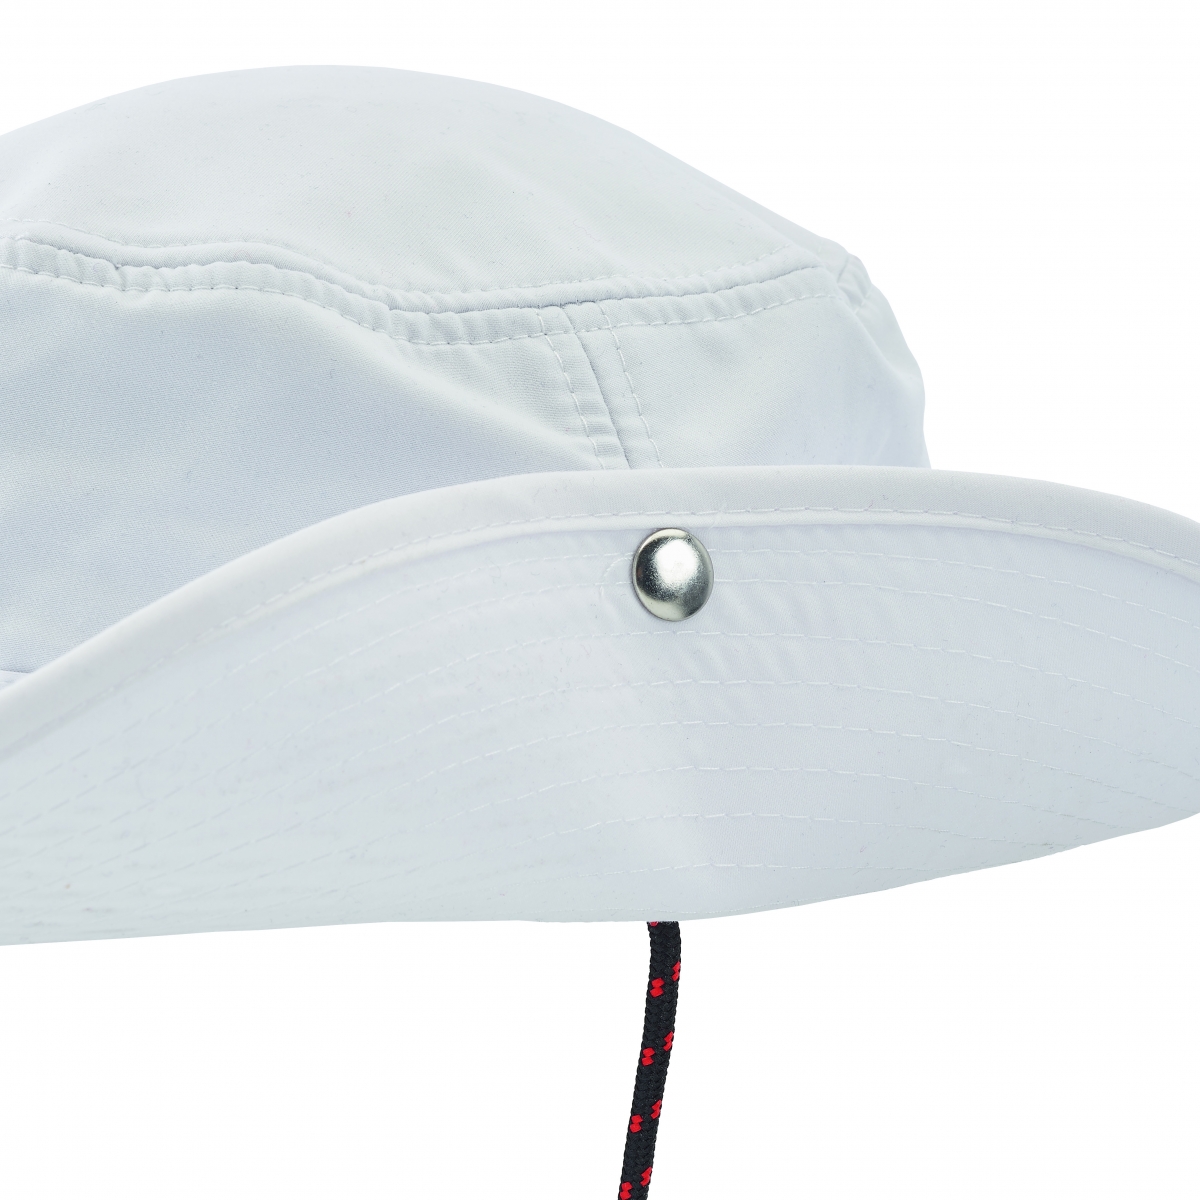 Musto - Evolution UV Fastdry Brimmed Hat | hoed